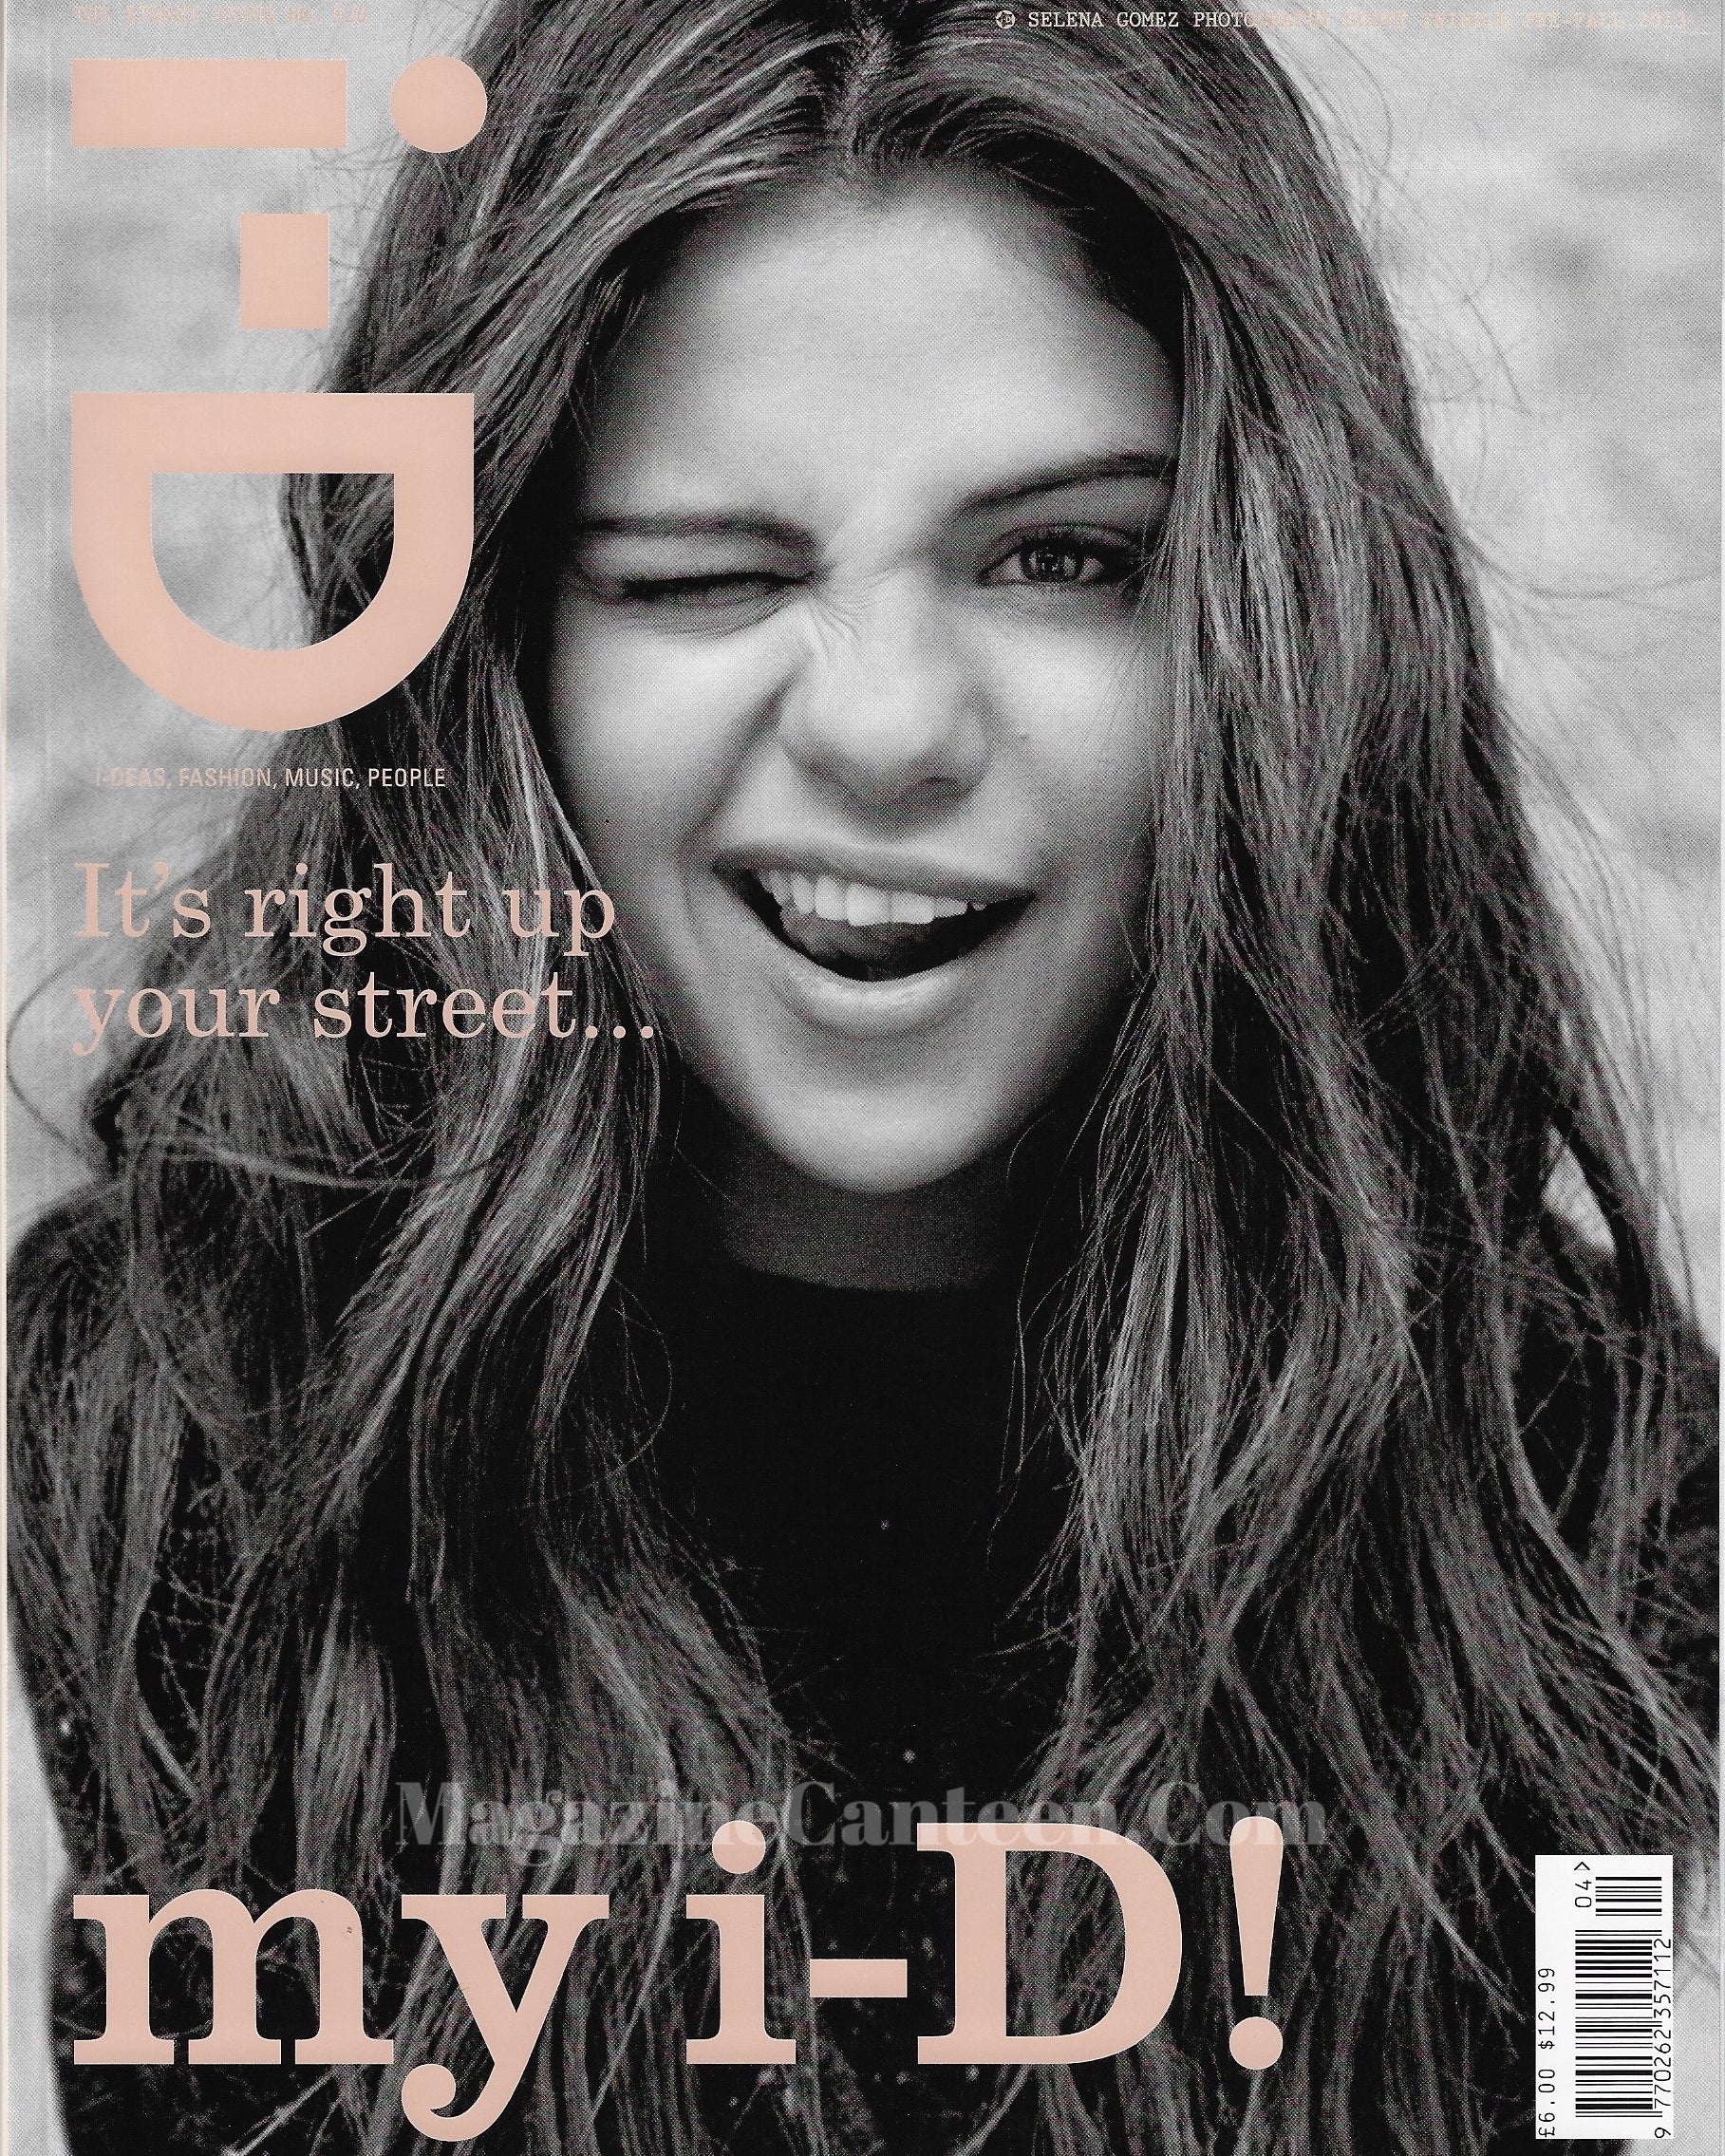 I-D Magazine 326 - Selena Gomez 2013